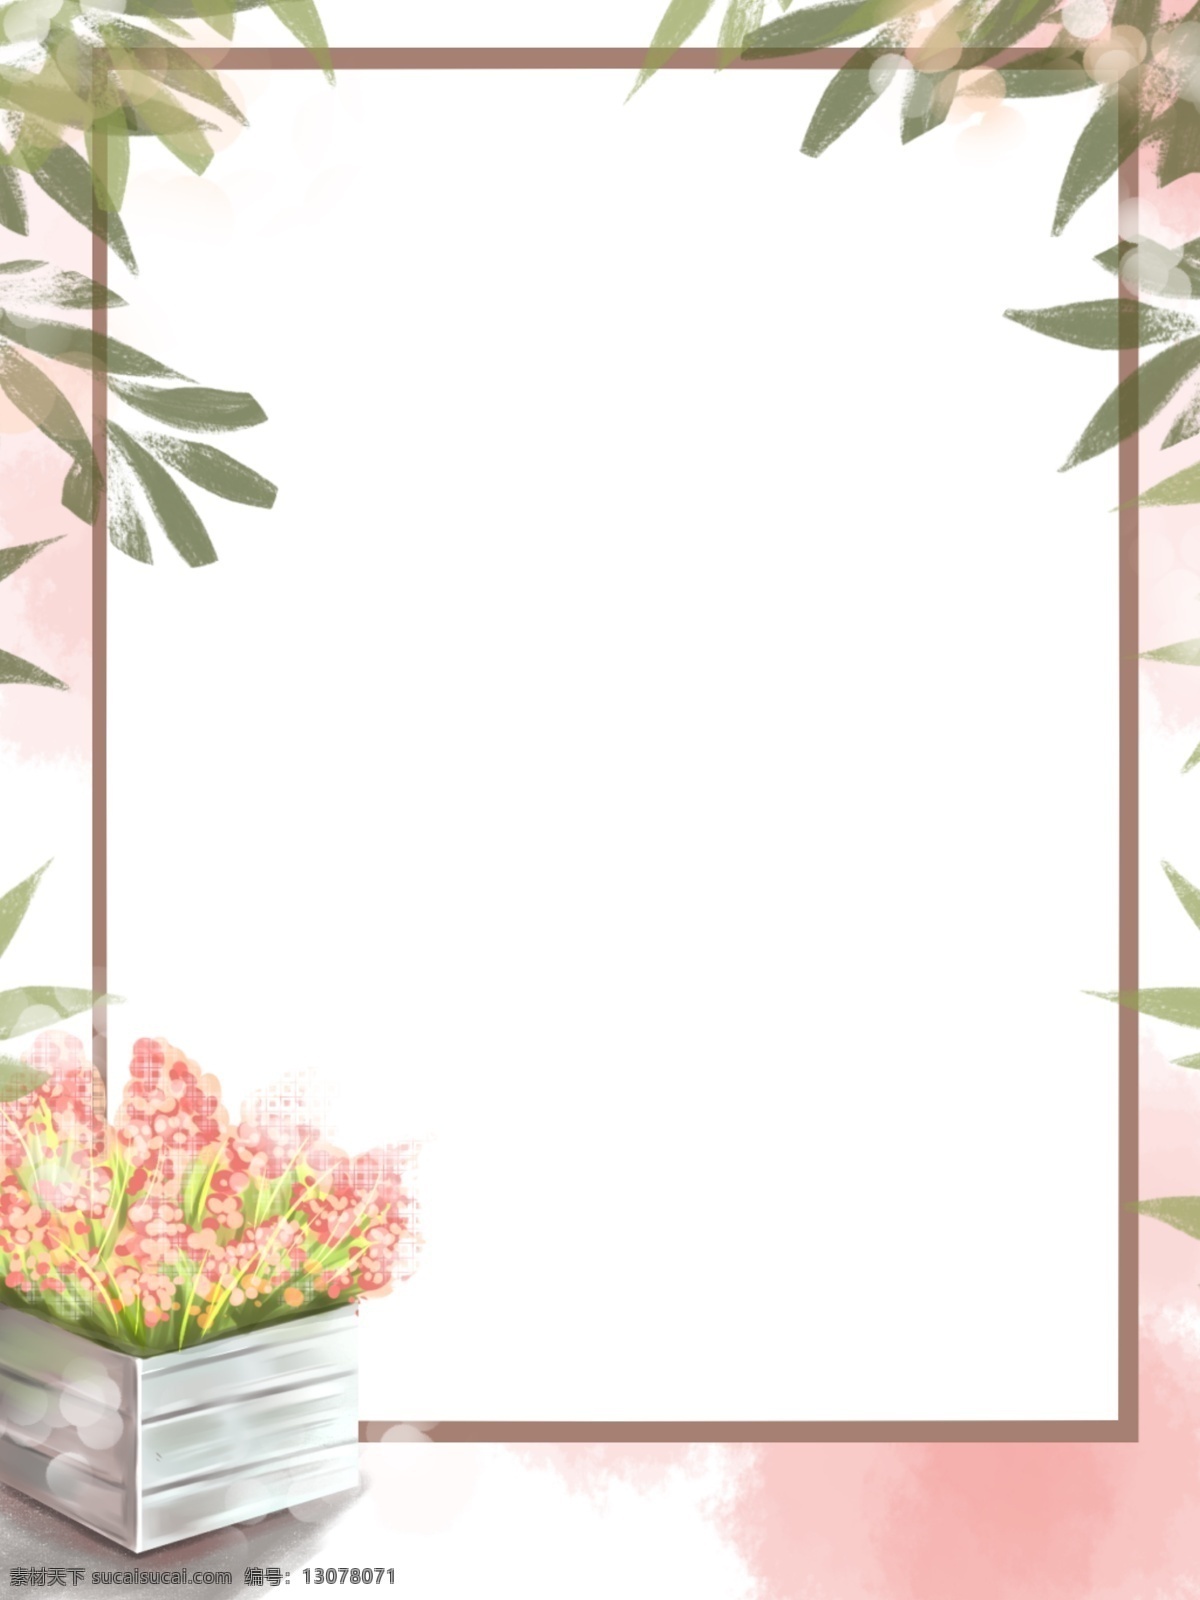 全 原创 手绘 边框 背景 水彩 鲜花 绿植 淡雅 鲜花绿植背景 边框背景 树叶 花朵 粉色